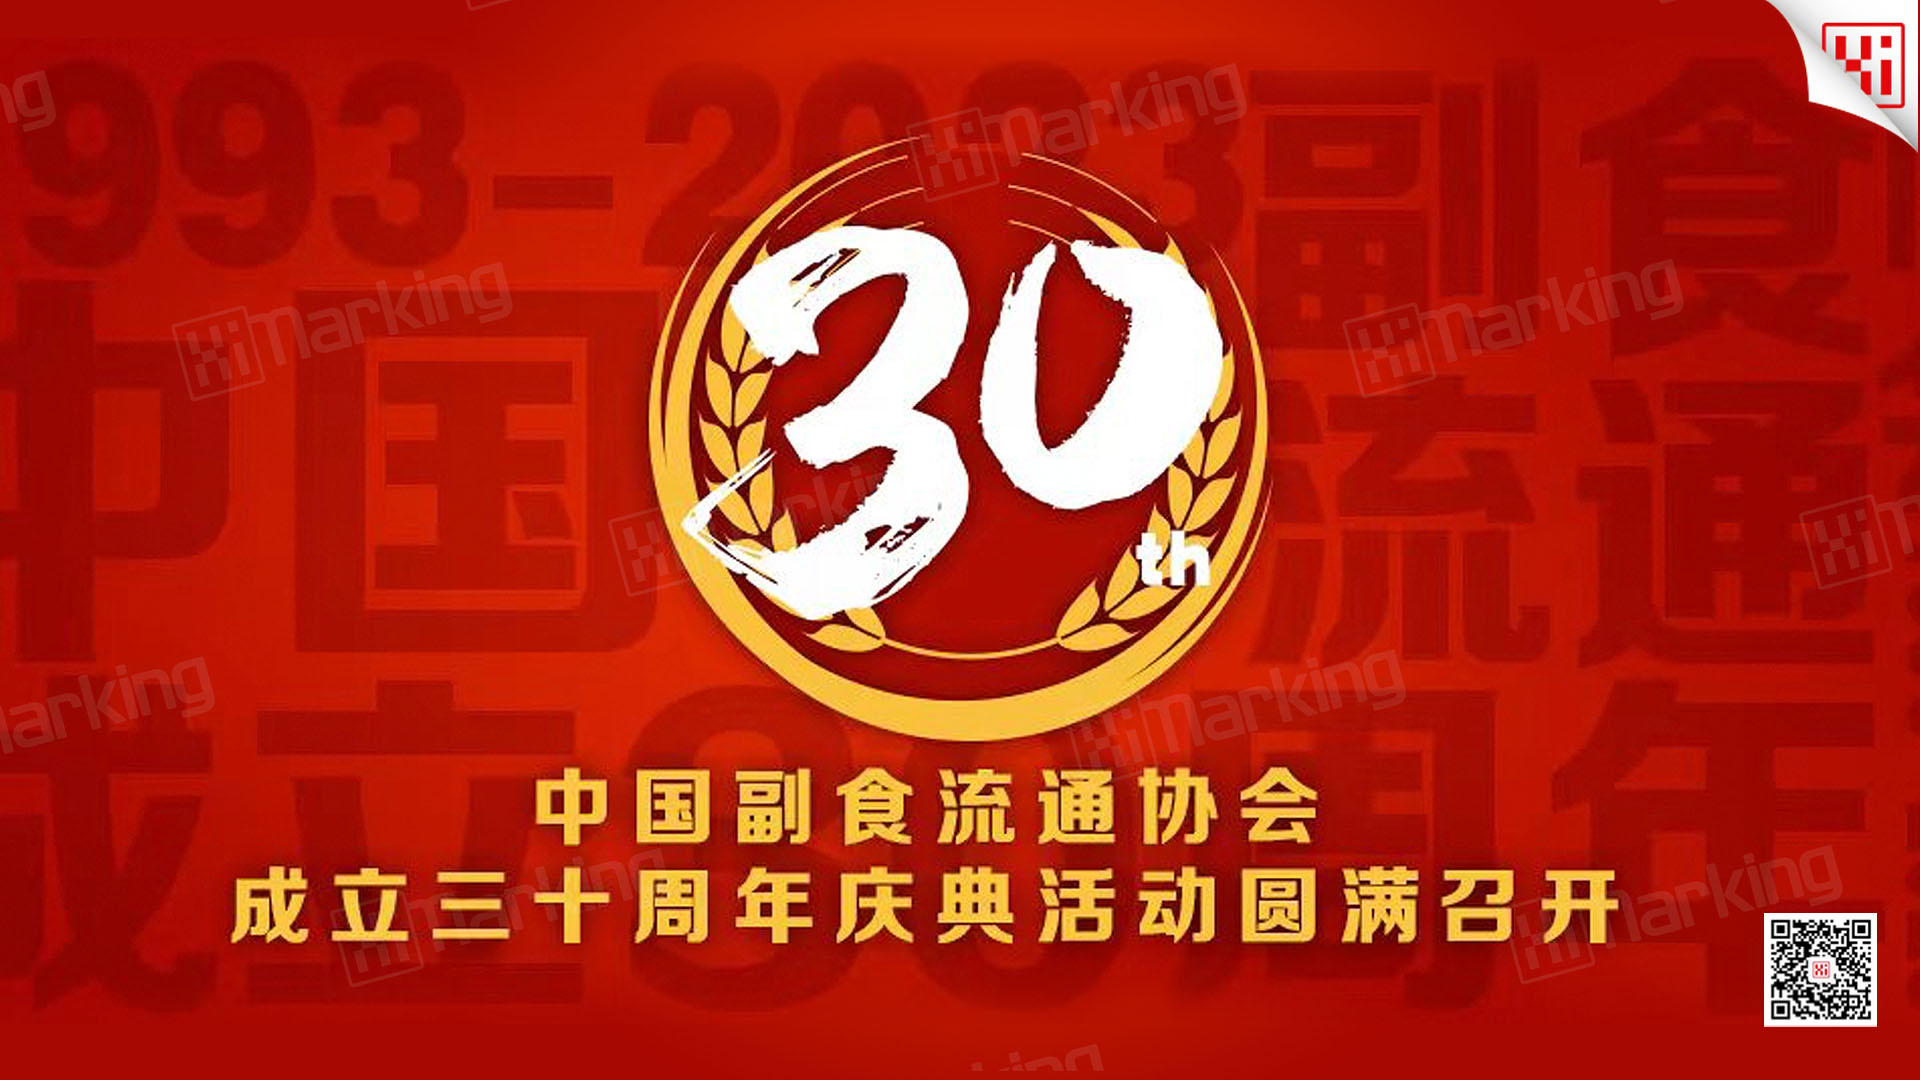 食品安全 | 中选科技受邀参加中国副食品流通协会三十周年庆典